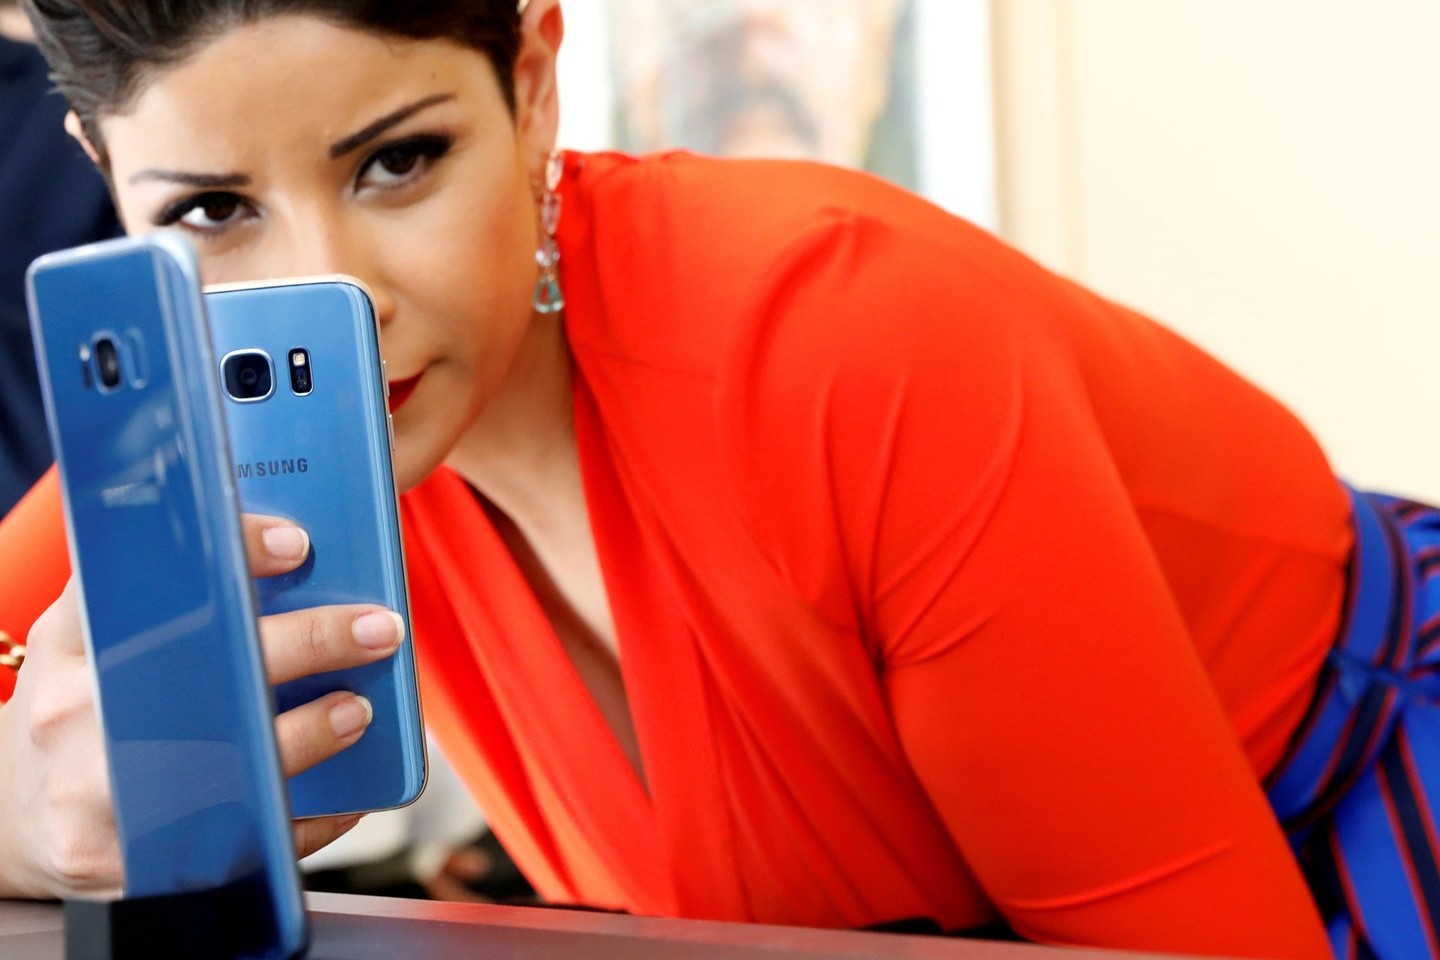 Amerikiečiai galės įsigyti „Galaxy S8 Microsoft Edition“ telefonus.<br>Reuters/Scanpix nuotr.